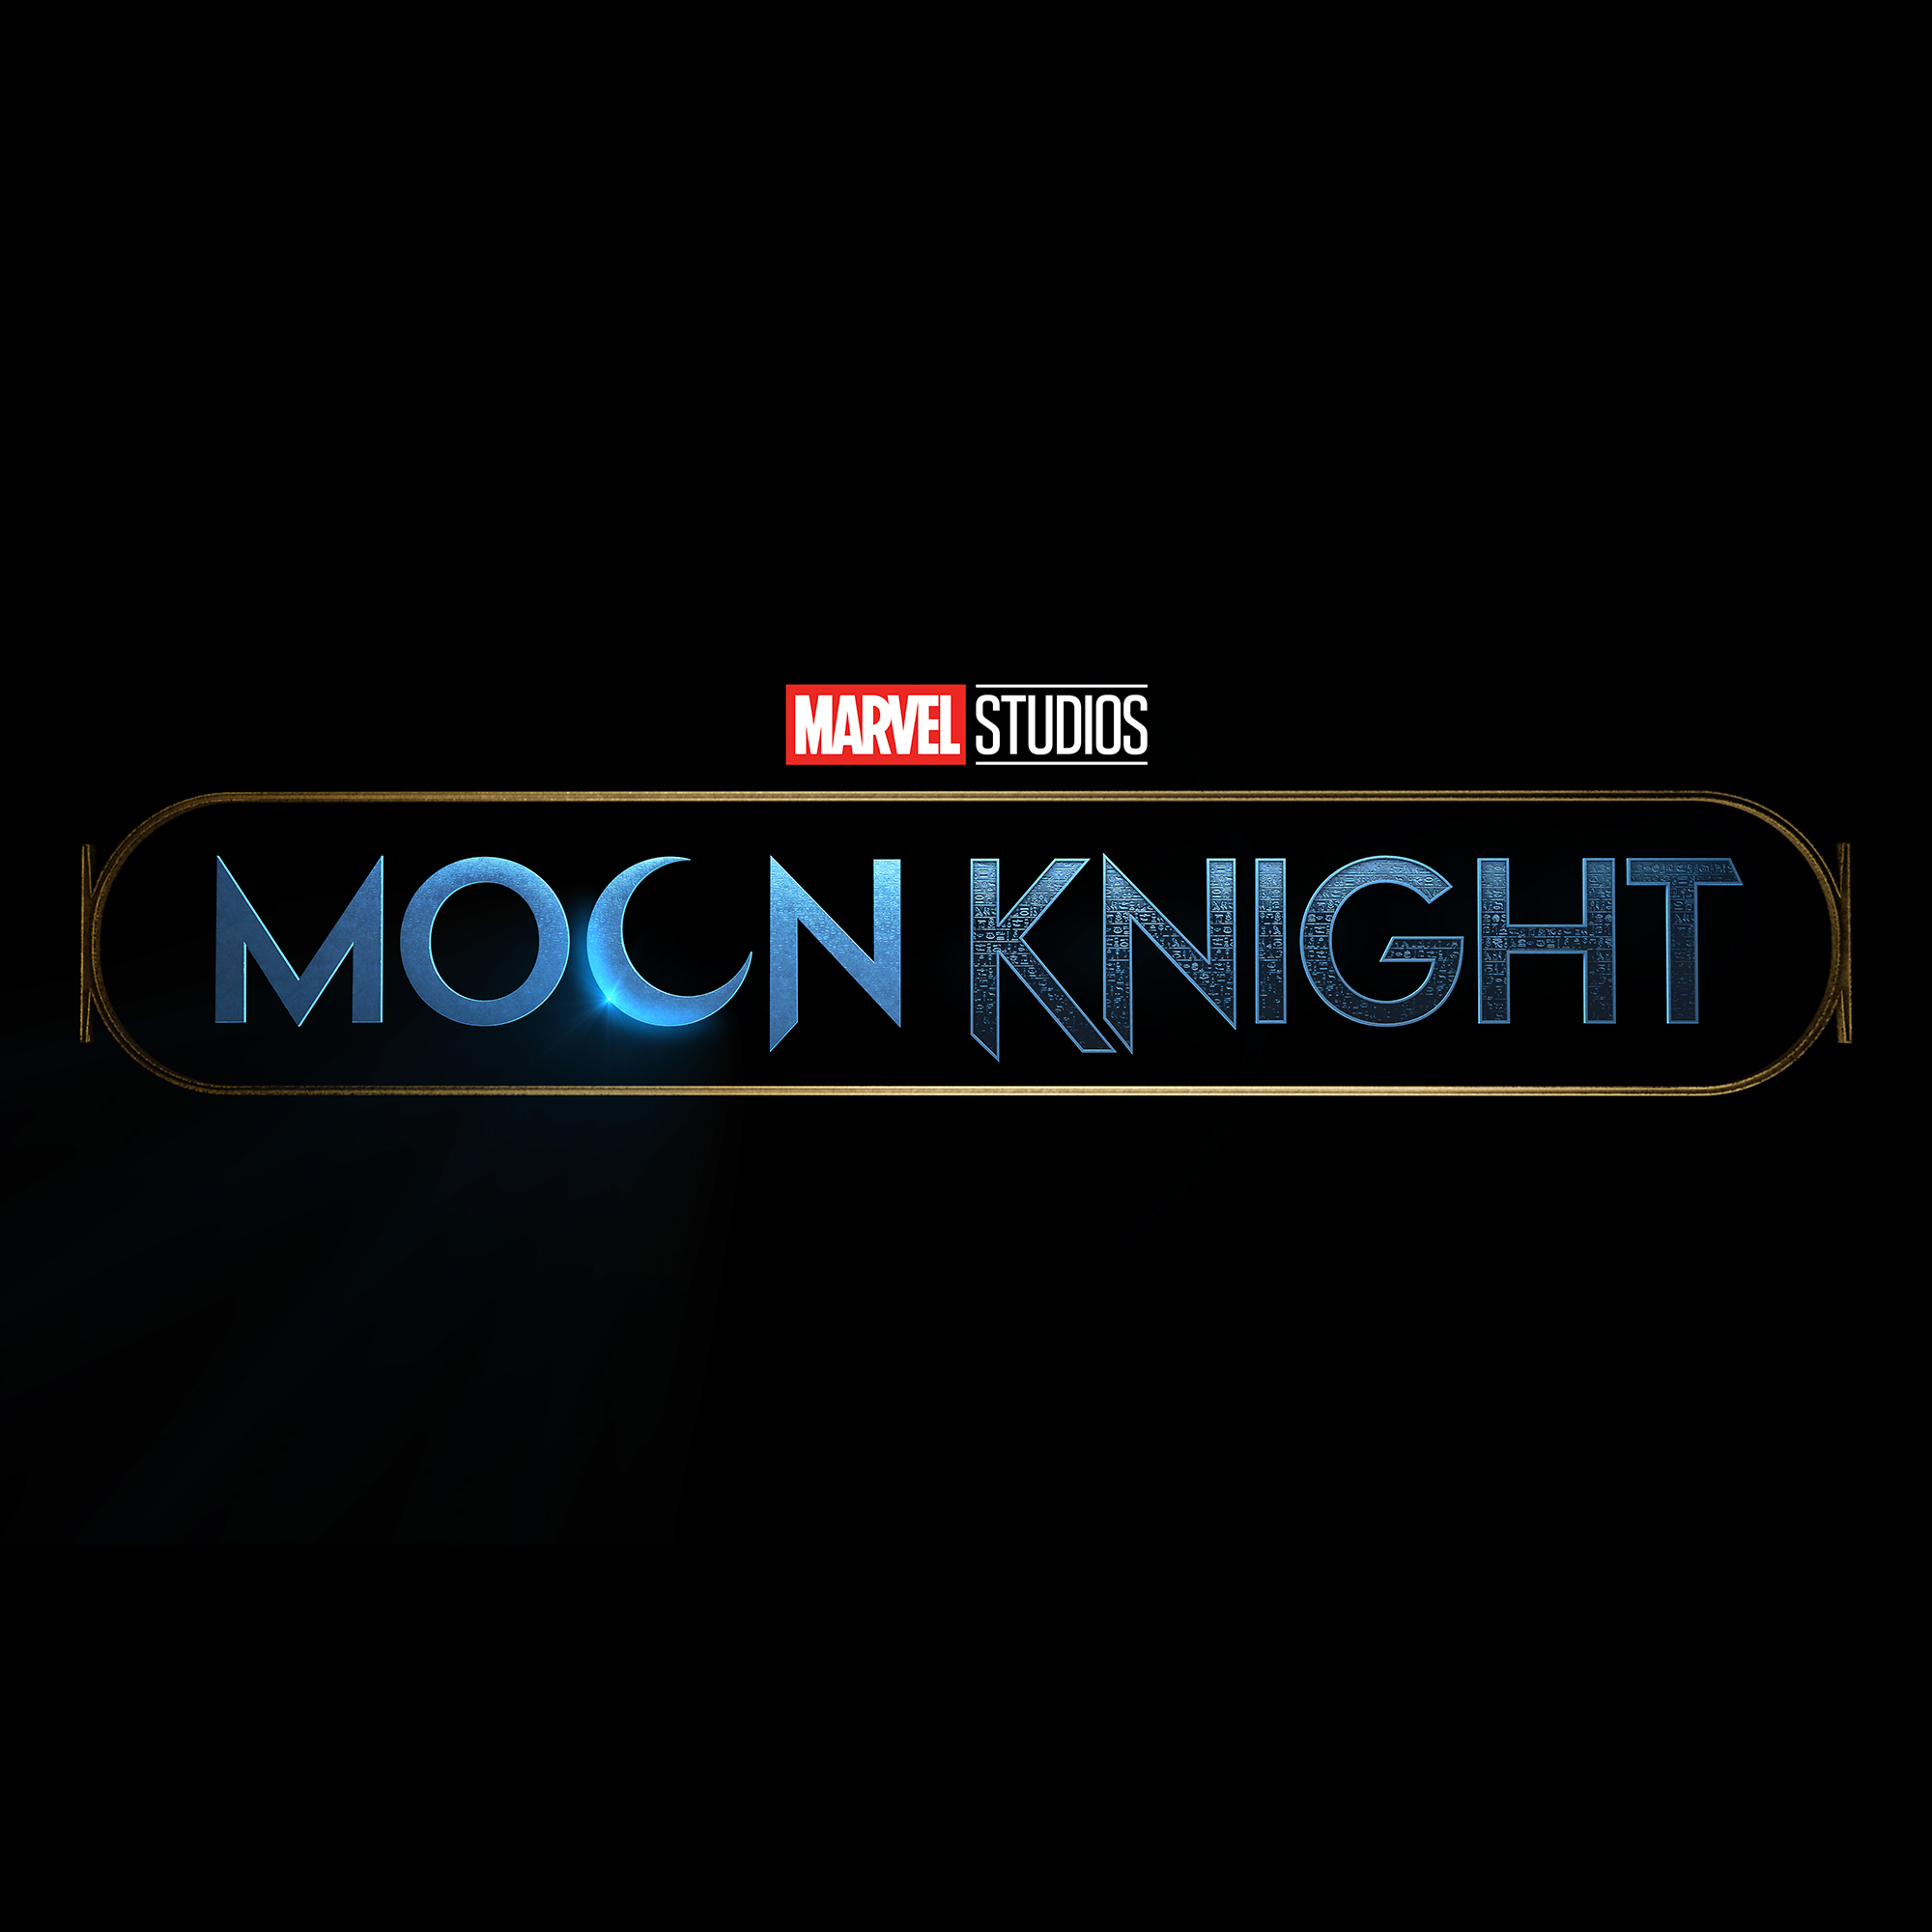 ¡Ethan Hawke se unirá al elenco de 'Moon Knight'!